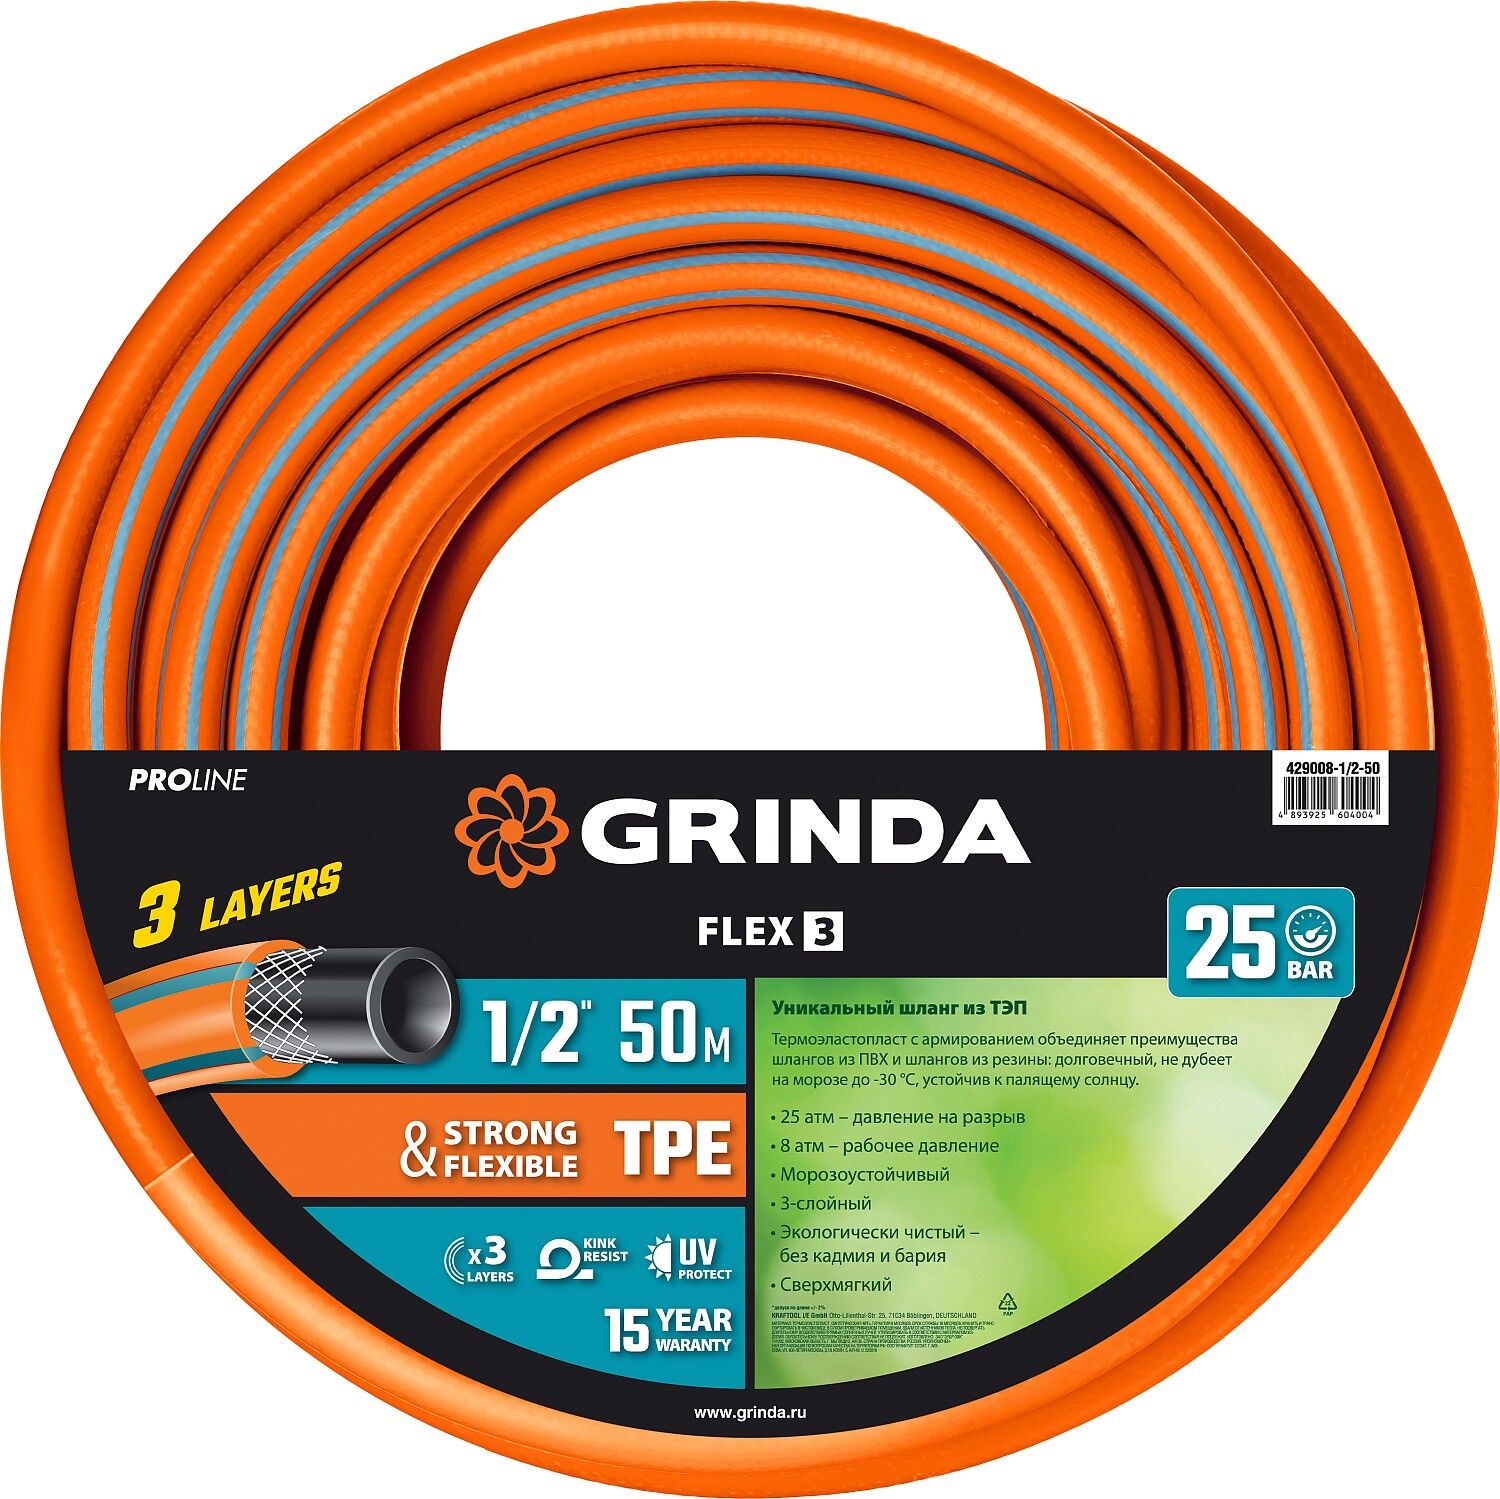 GRINDA FLEX 3, 1/2″, 50 м, 25 атм, из термоэластопласта, трёхслойный, армированный, гибкий, поливочный шланг, PROLine (4